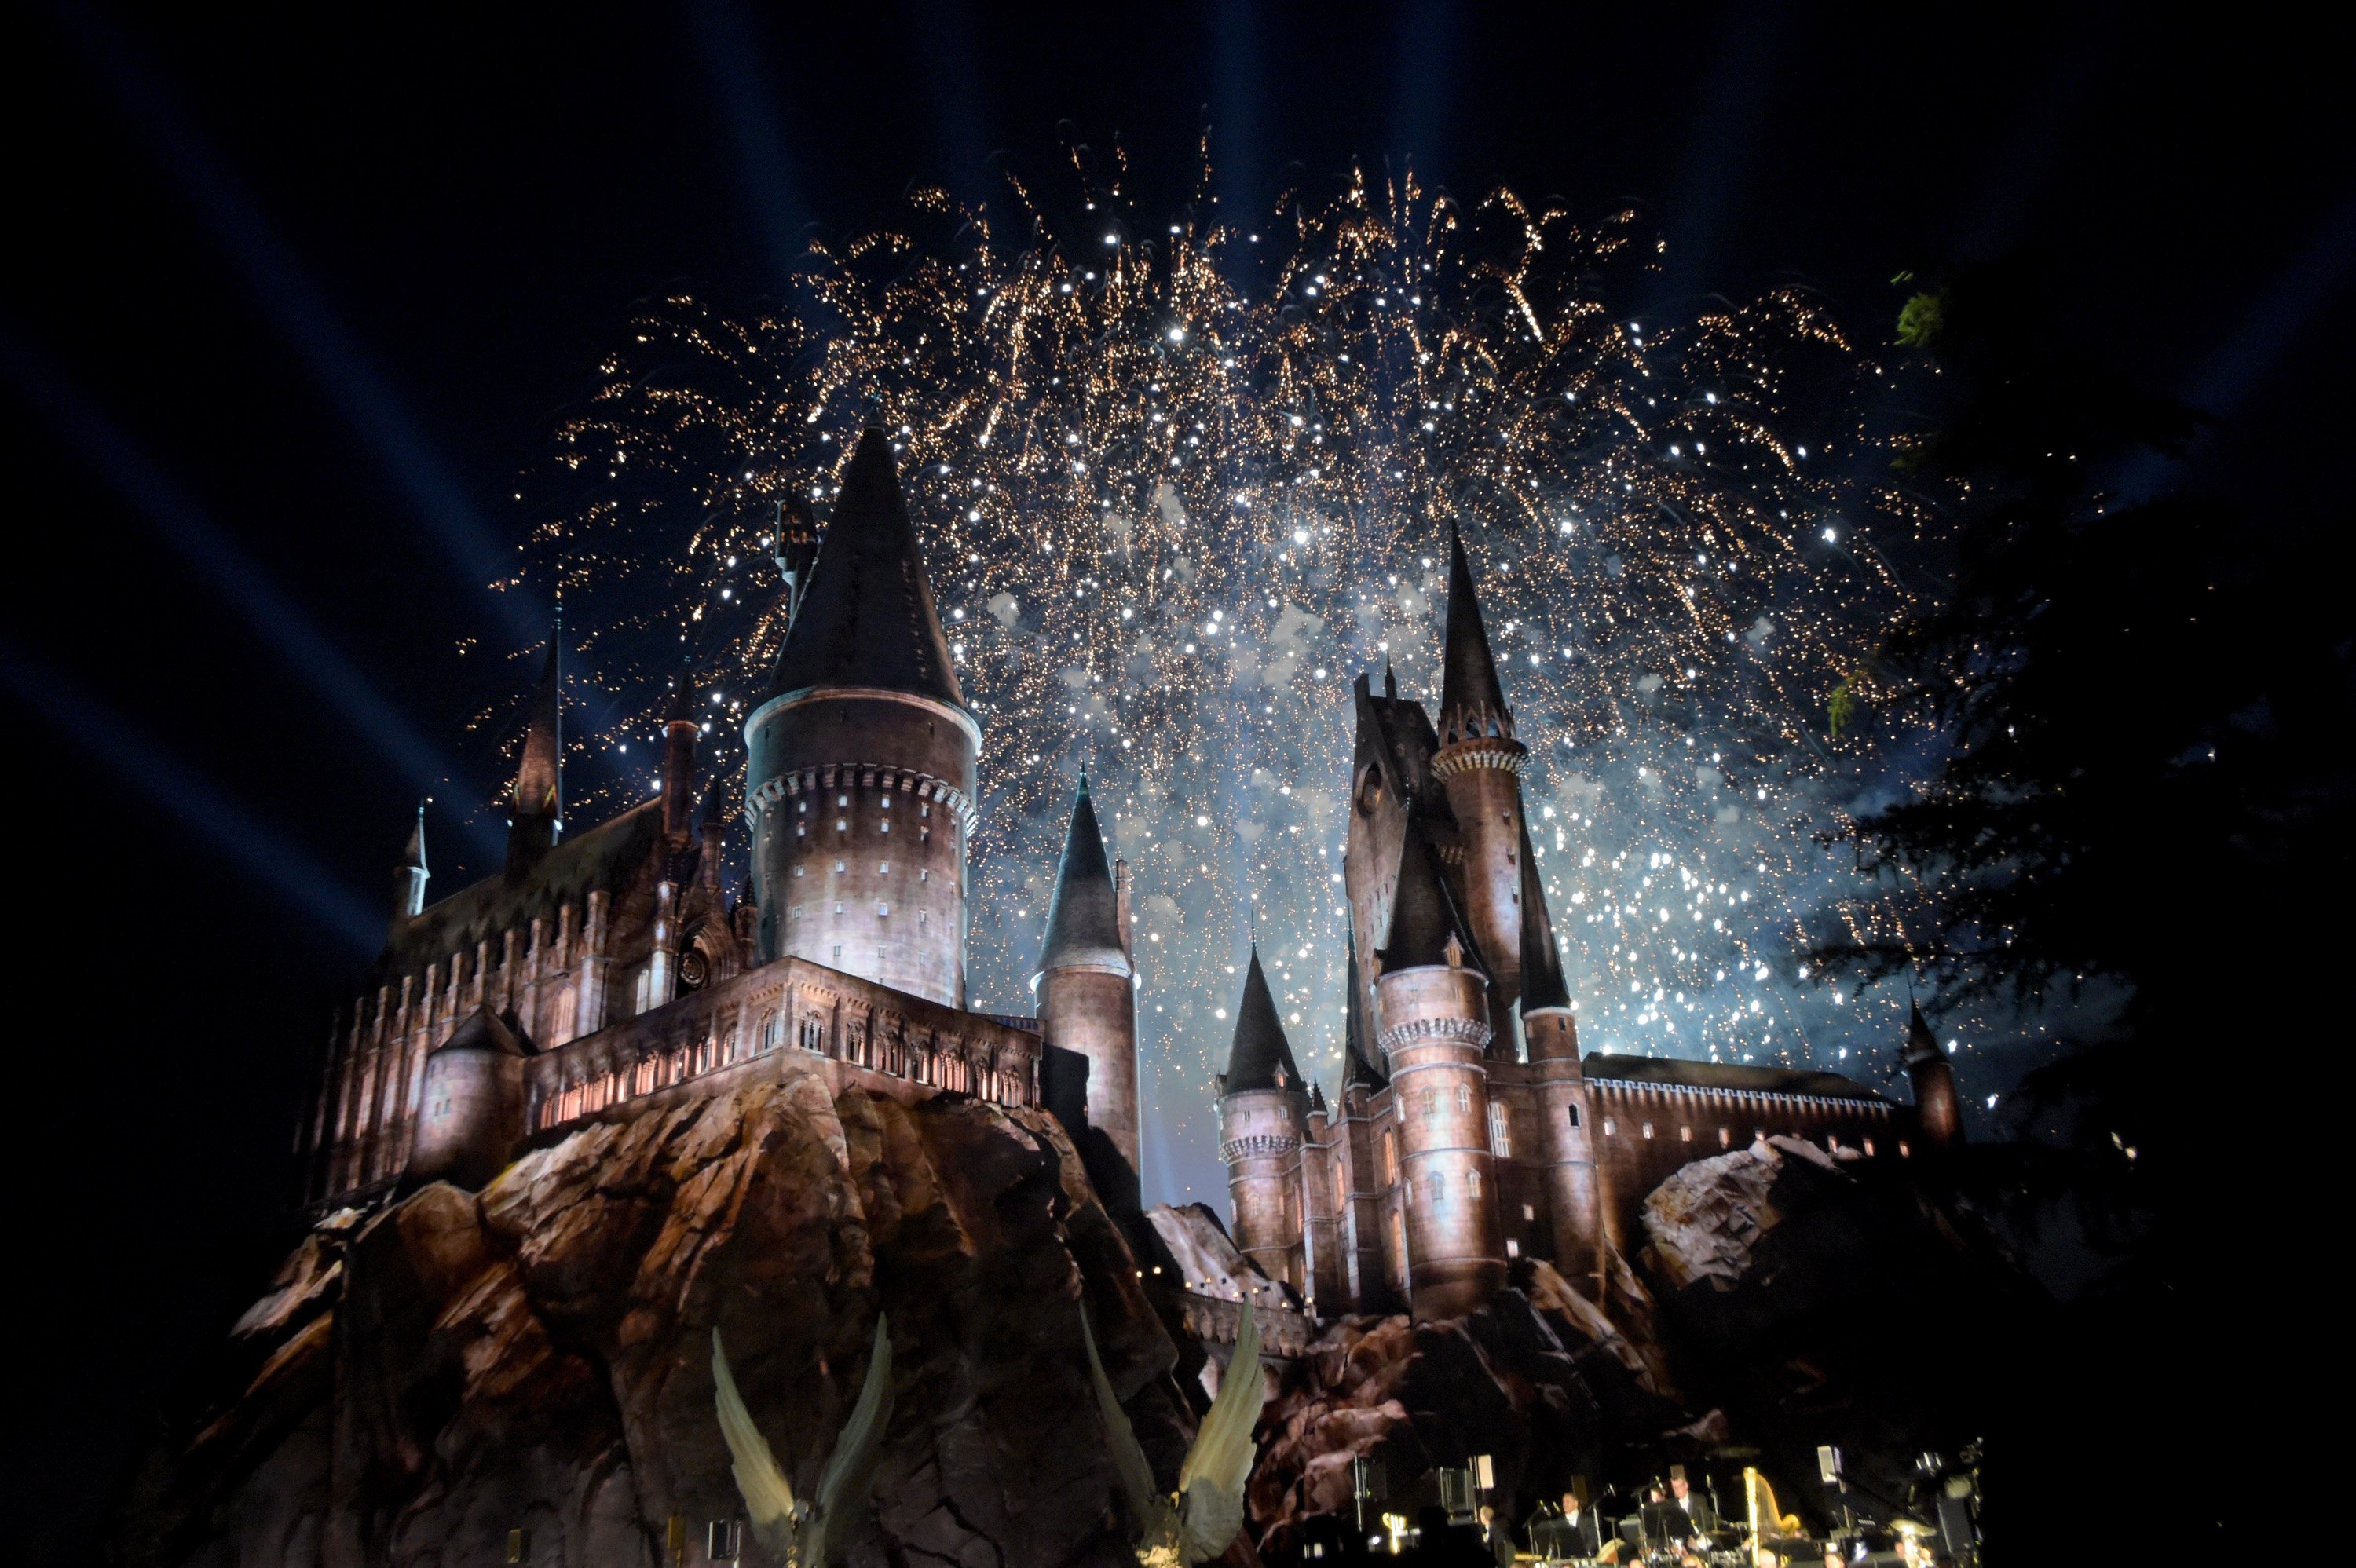 Vista de los fuegos artificiales detrás del castillo de Hogwarts asistir a la inauguración del 'Mundo Mágico de Harry Potter' en Universal Studios Hollywood el 5 de abril de 2016. | Foto: Getty Images